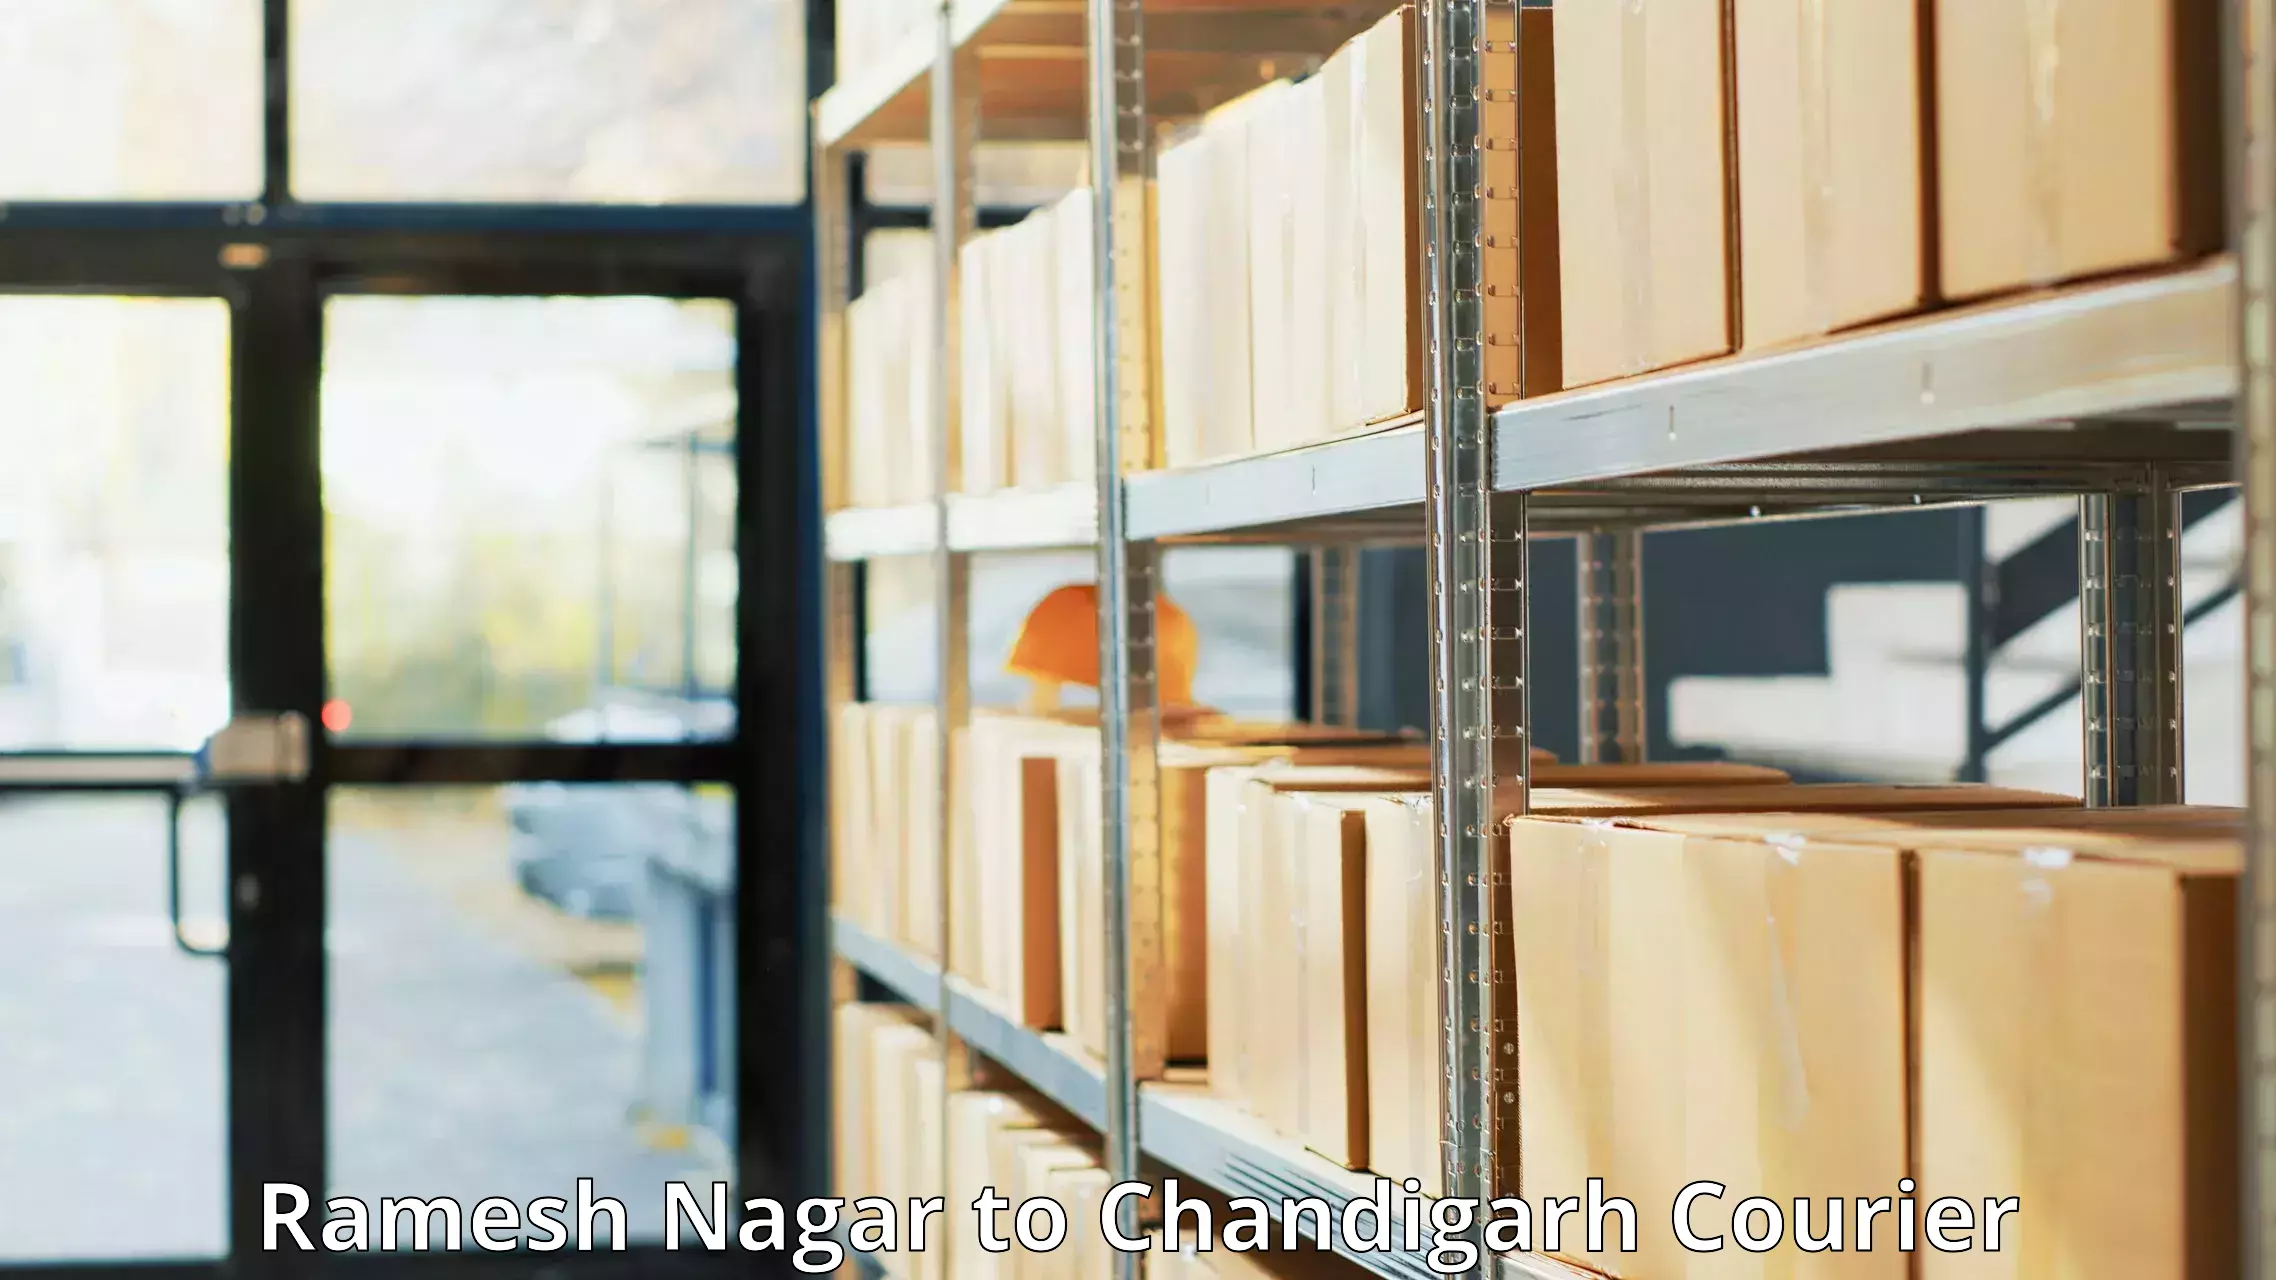 Flexible delivery schedules Ramesh Nagar to Chandigarh